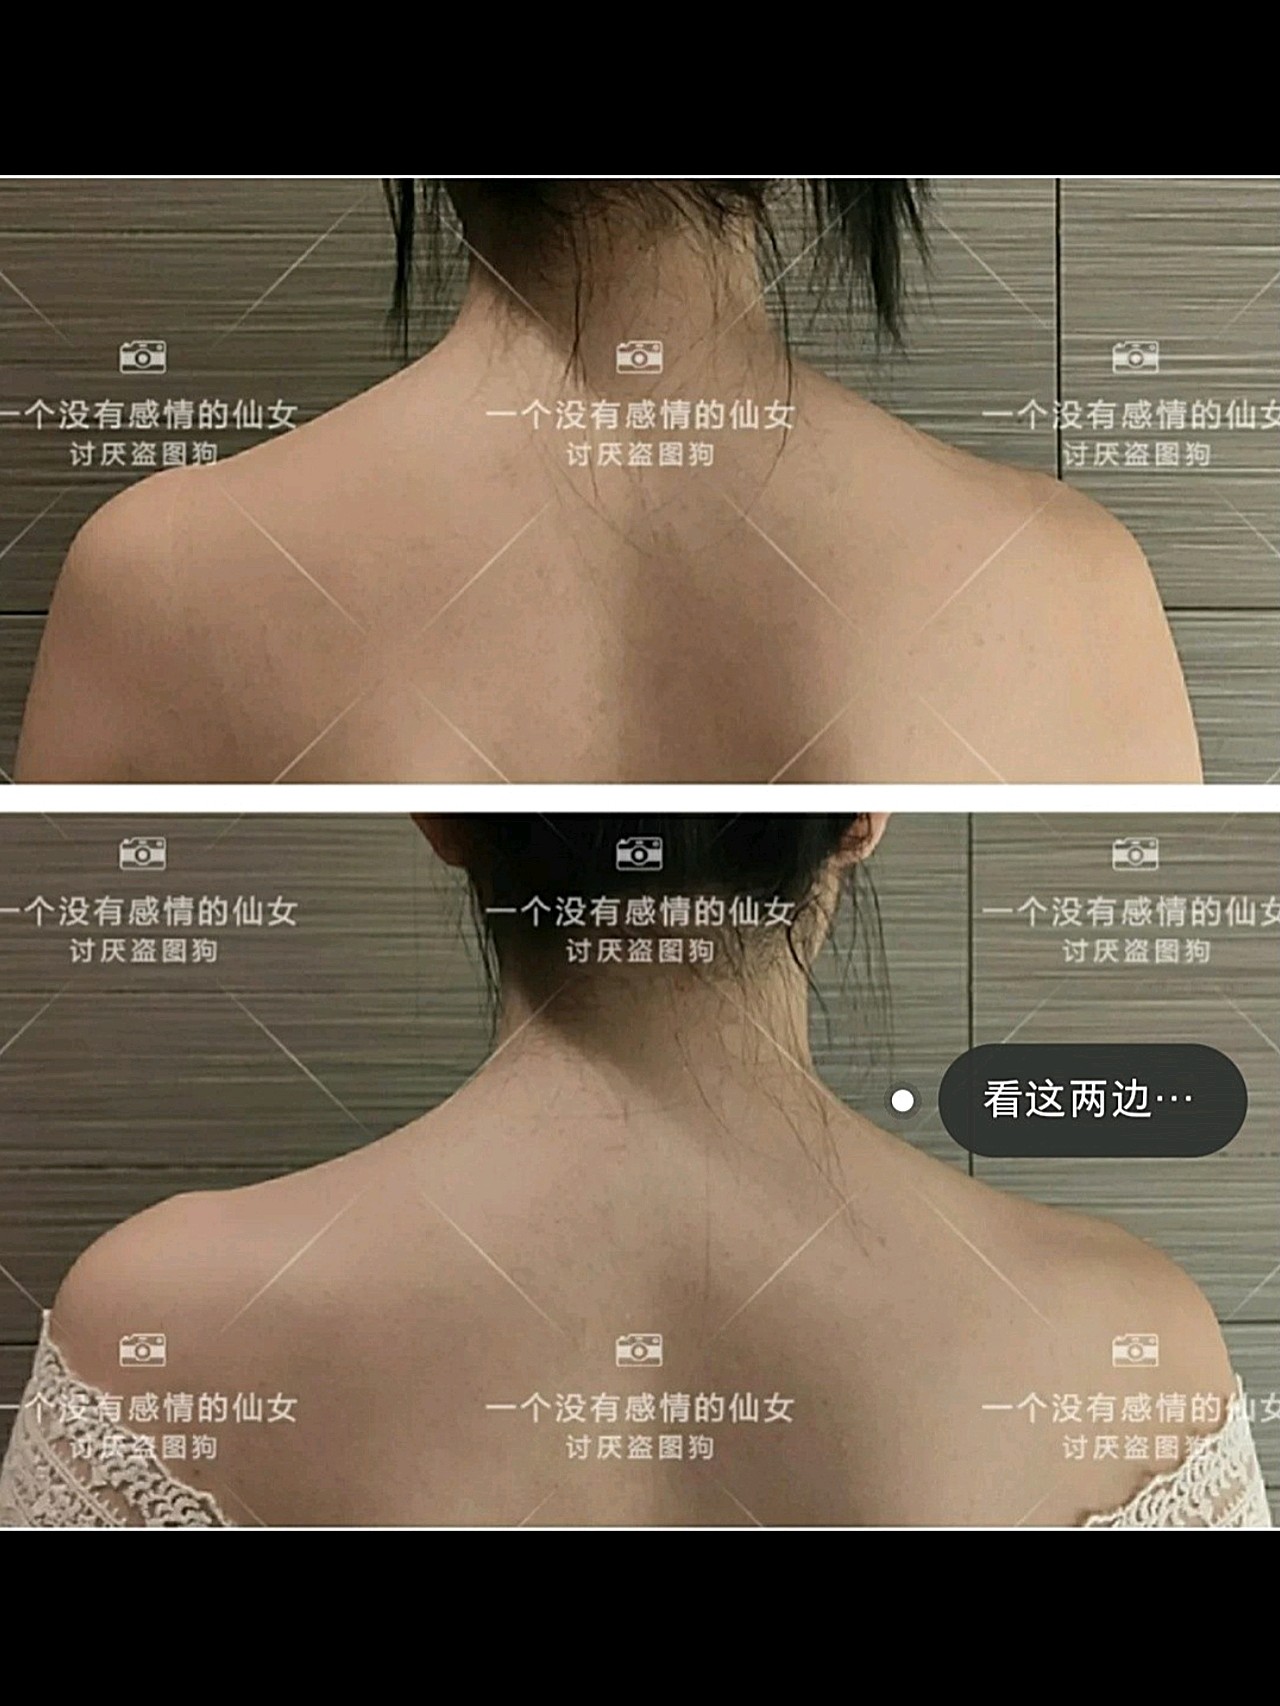 瘦肩针案例图片